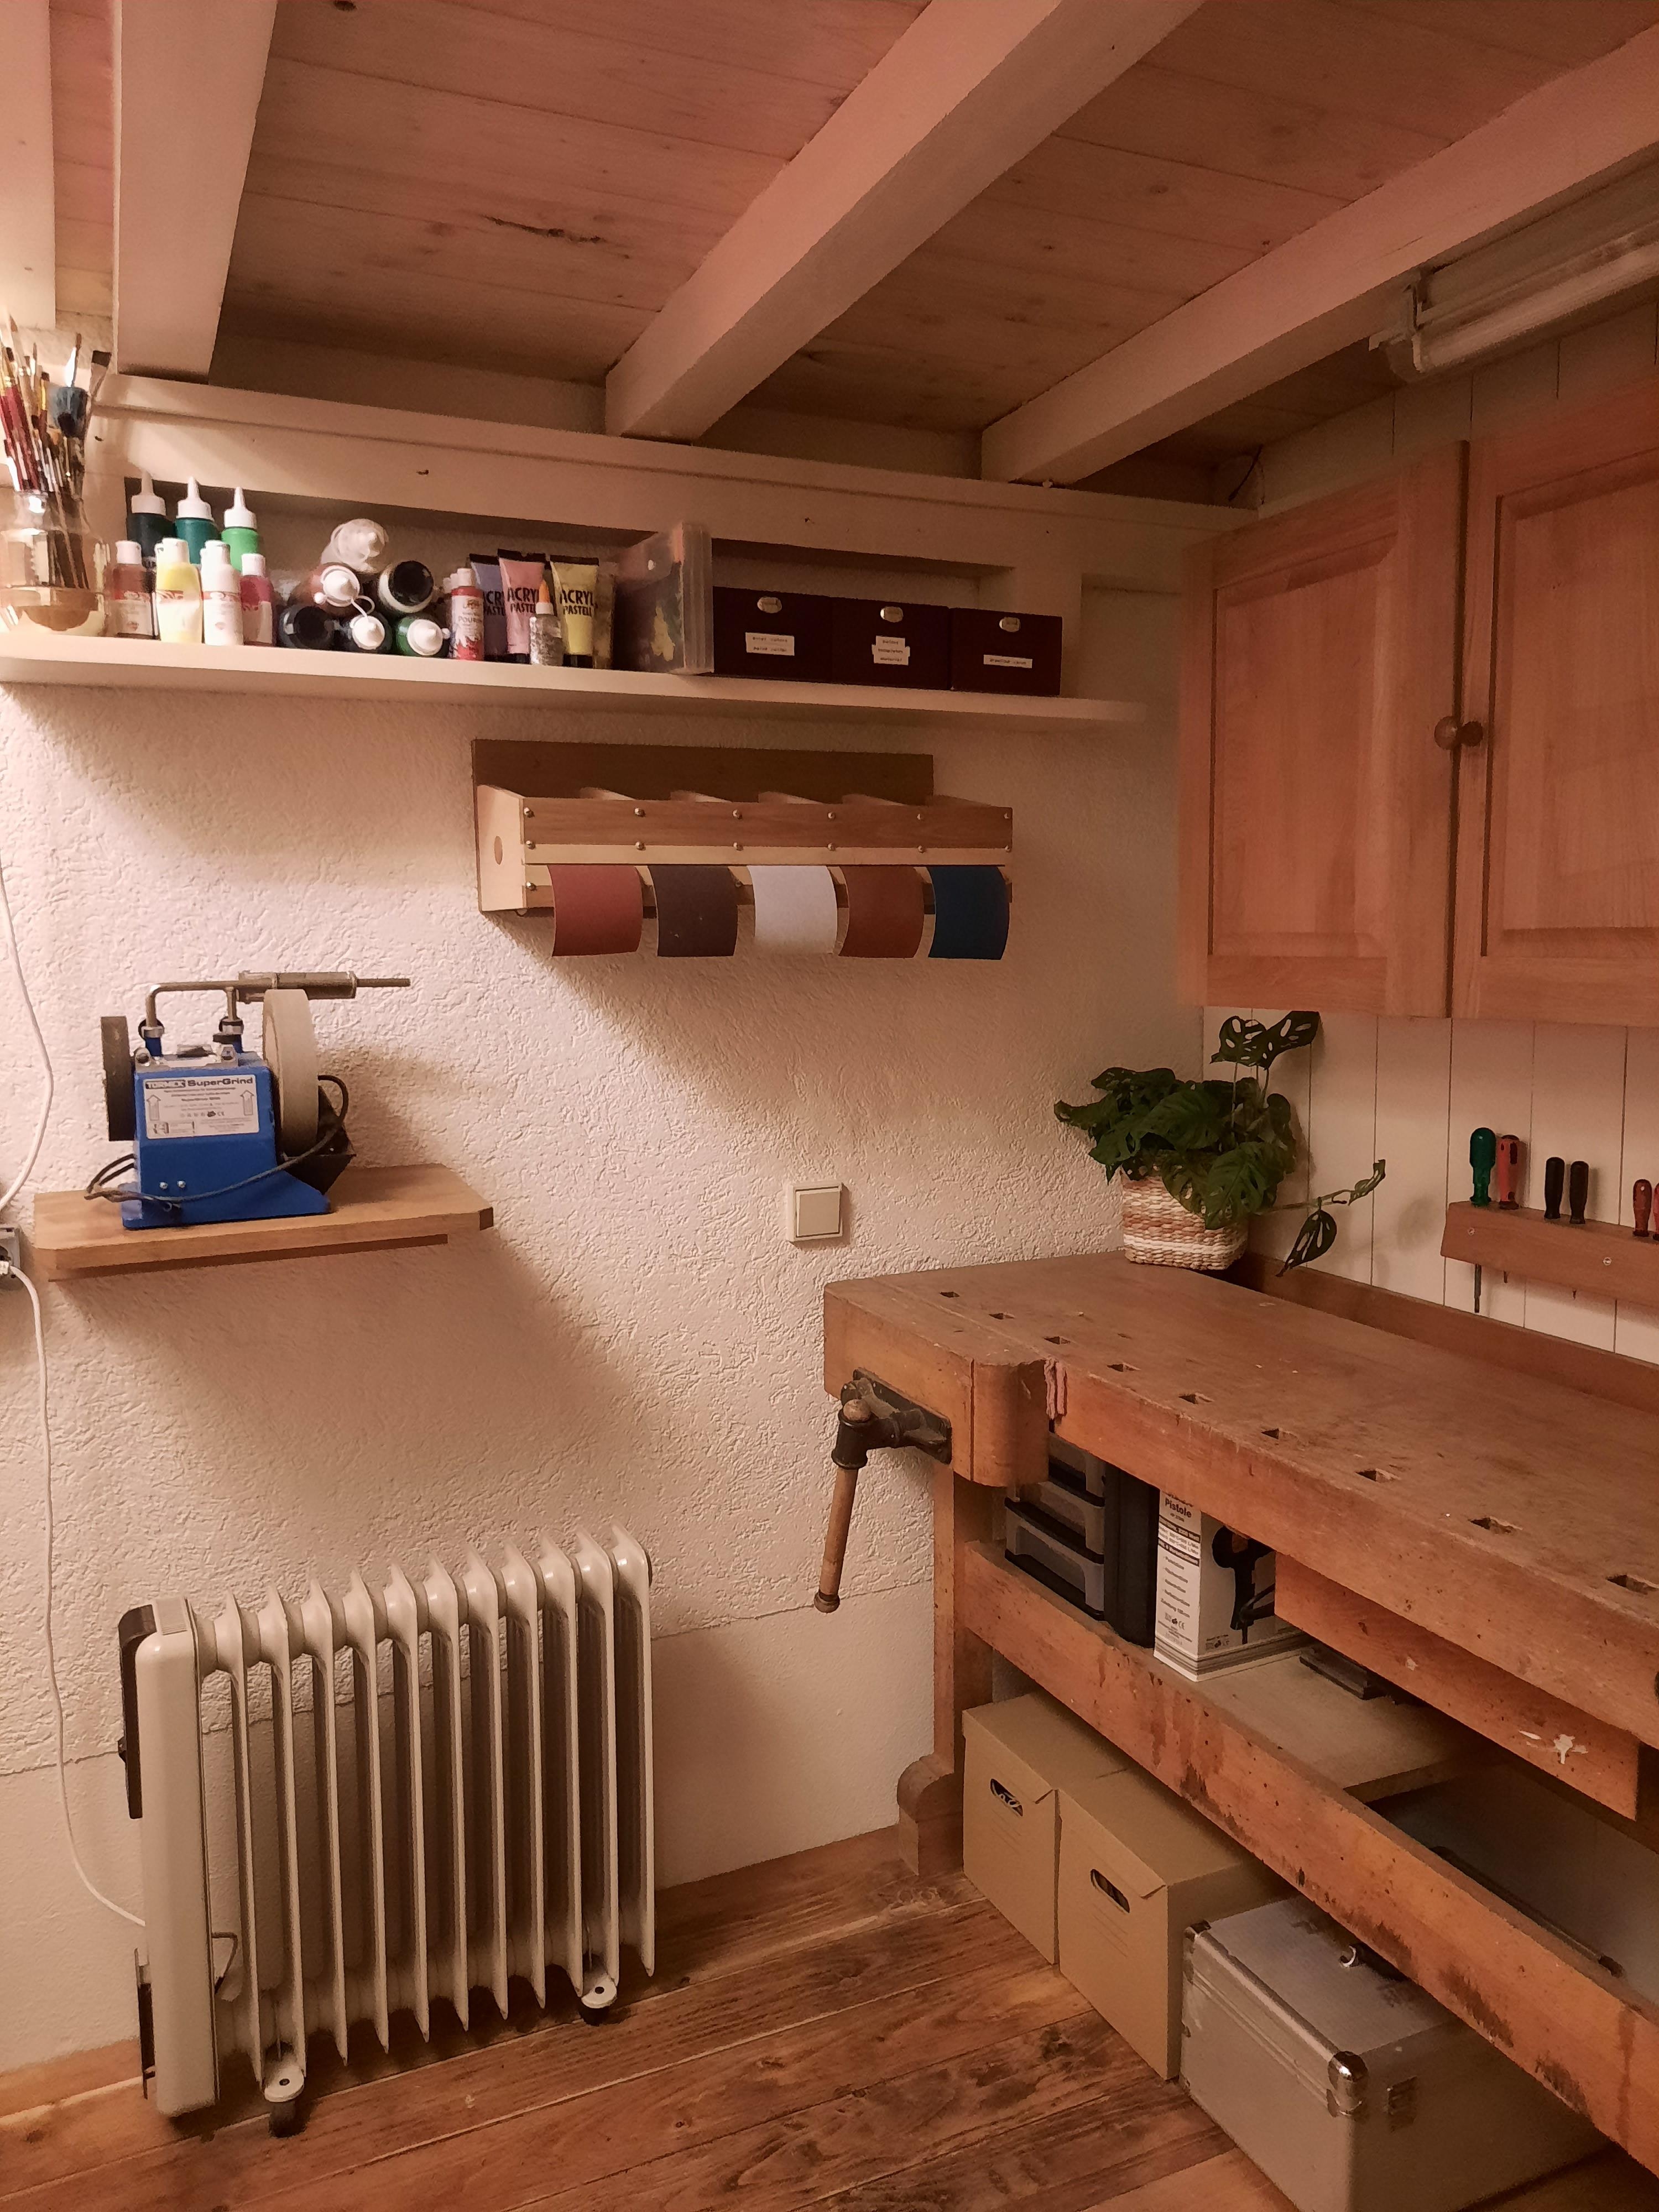 Meine kleine Werkstattwohnung...
#wohnung #werkstatt #kreativraum #holz #weiß #kleinaberfein #couchstyle 